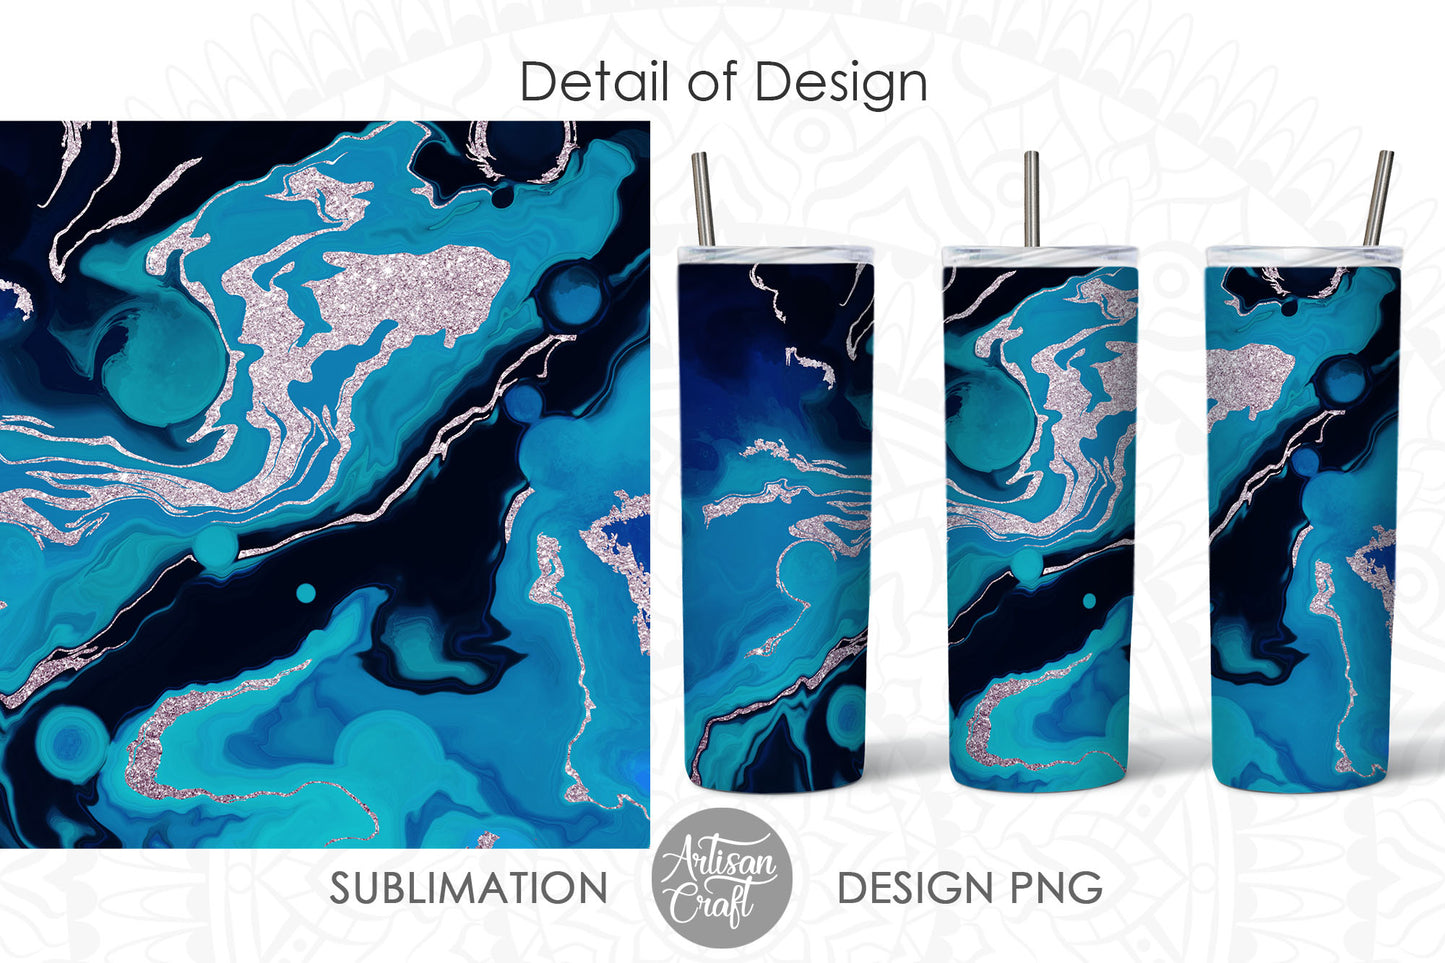 20 oz tumbler sublimation designs with fluid art